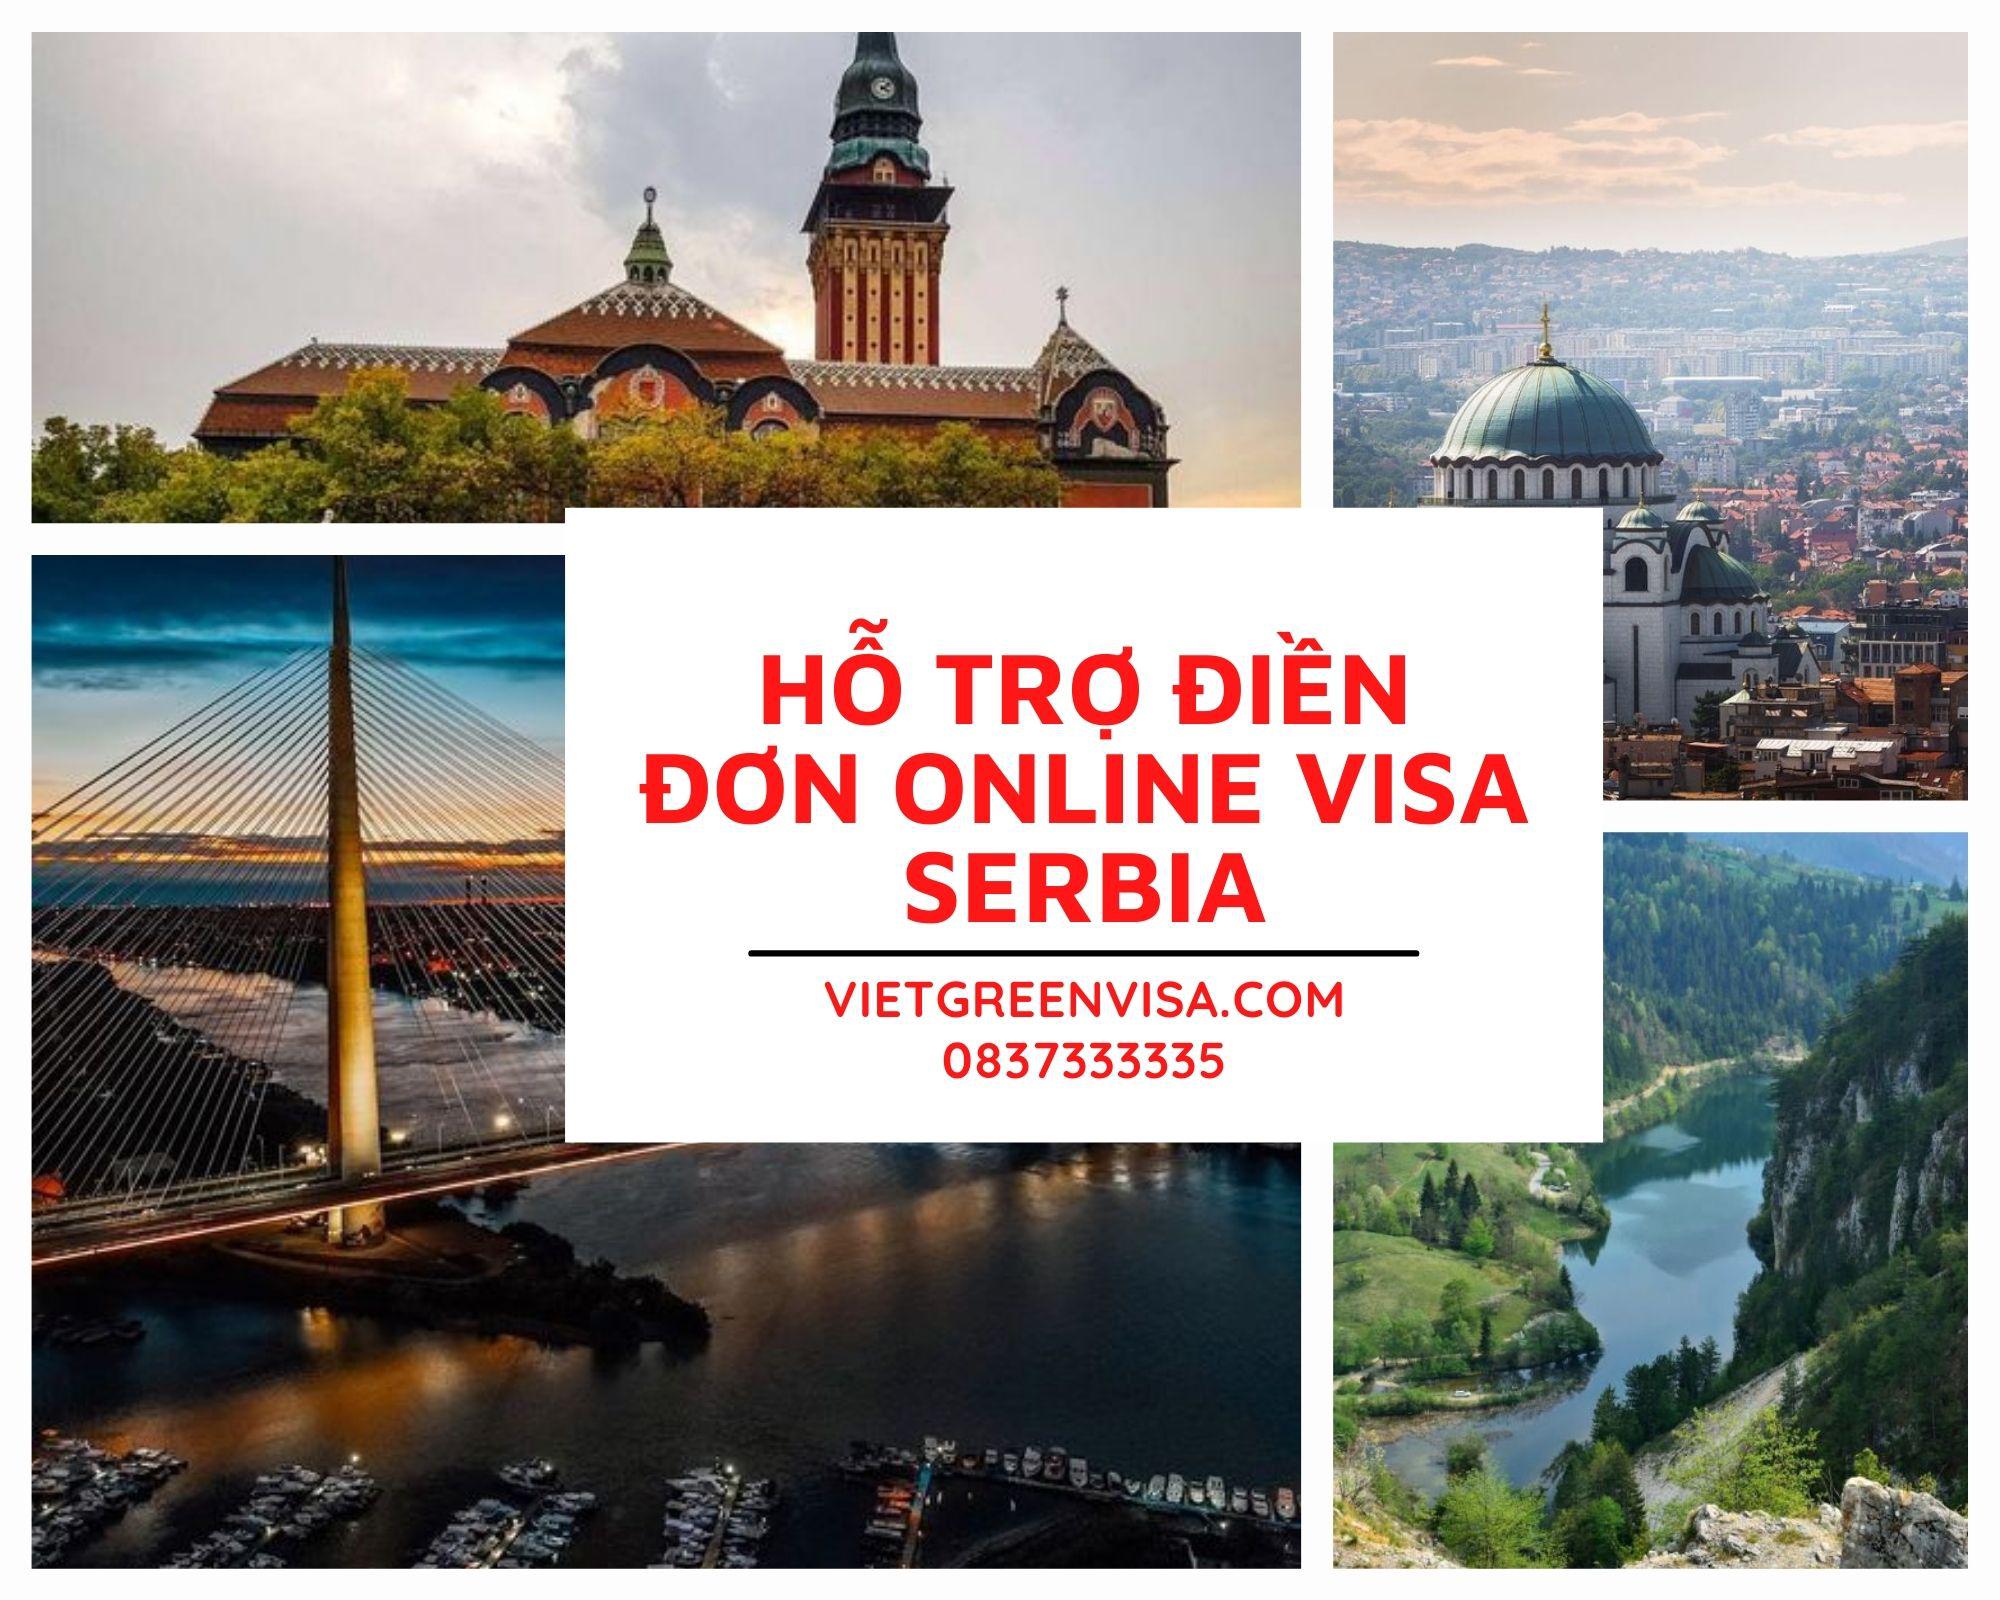 Dịch vụ điền đơn visa Serbia online nhanh